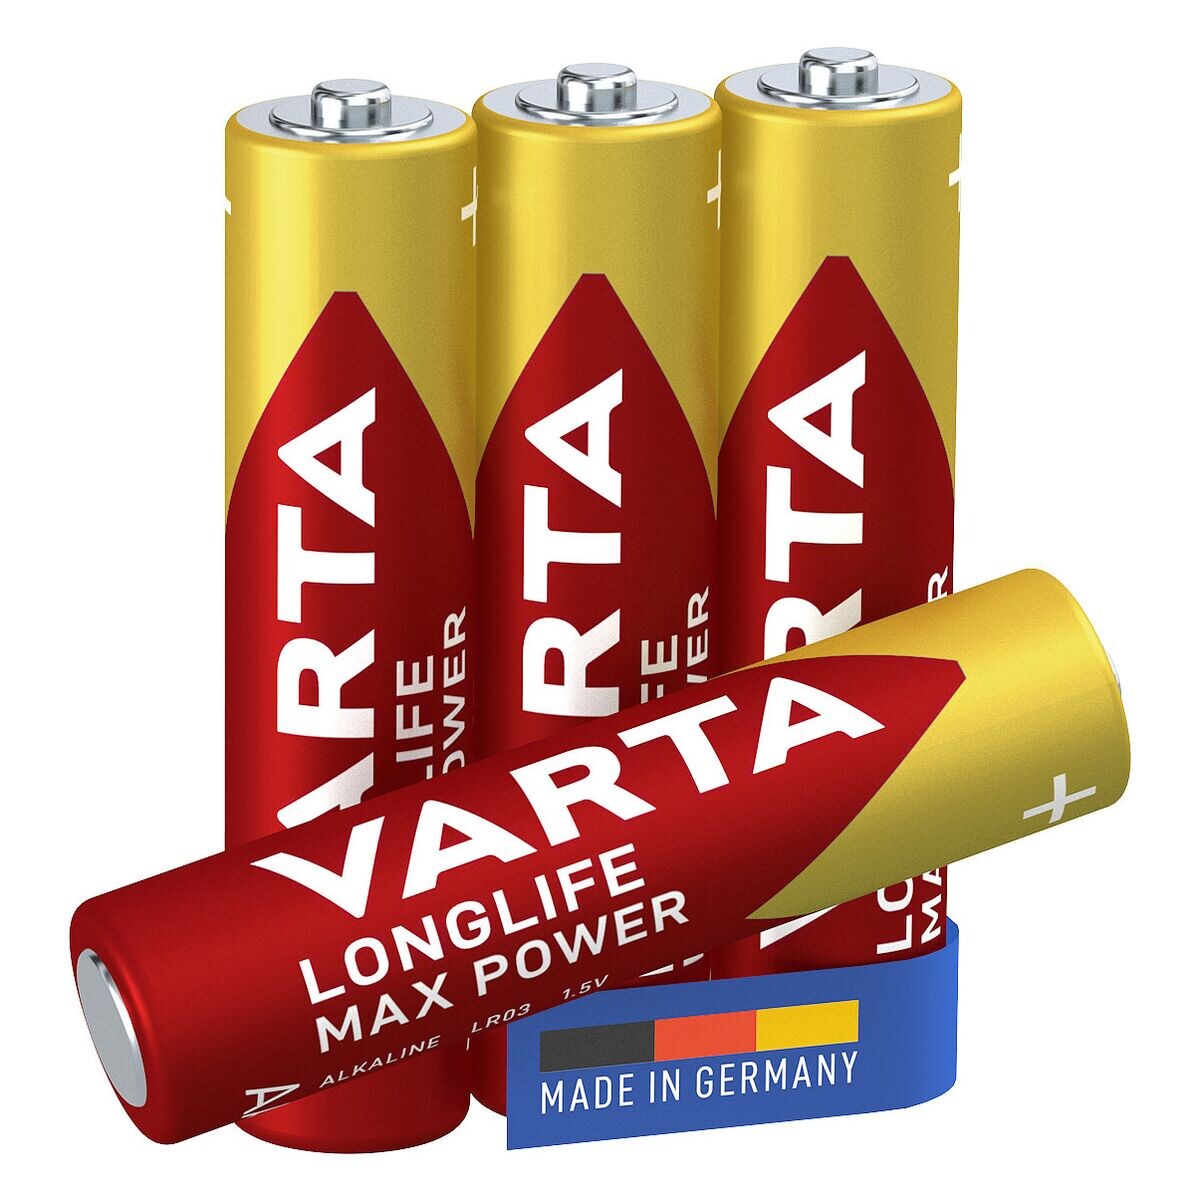 Varta Pak van 4 batterijen LONGLIFE Max Power Micro / AAA / LR03